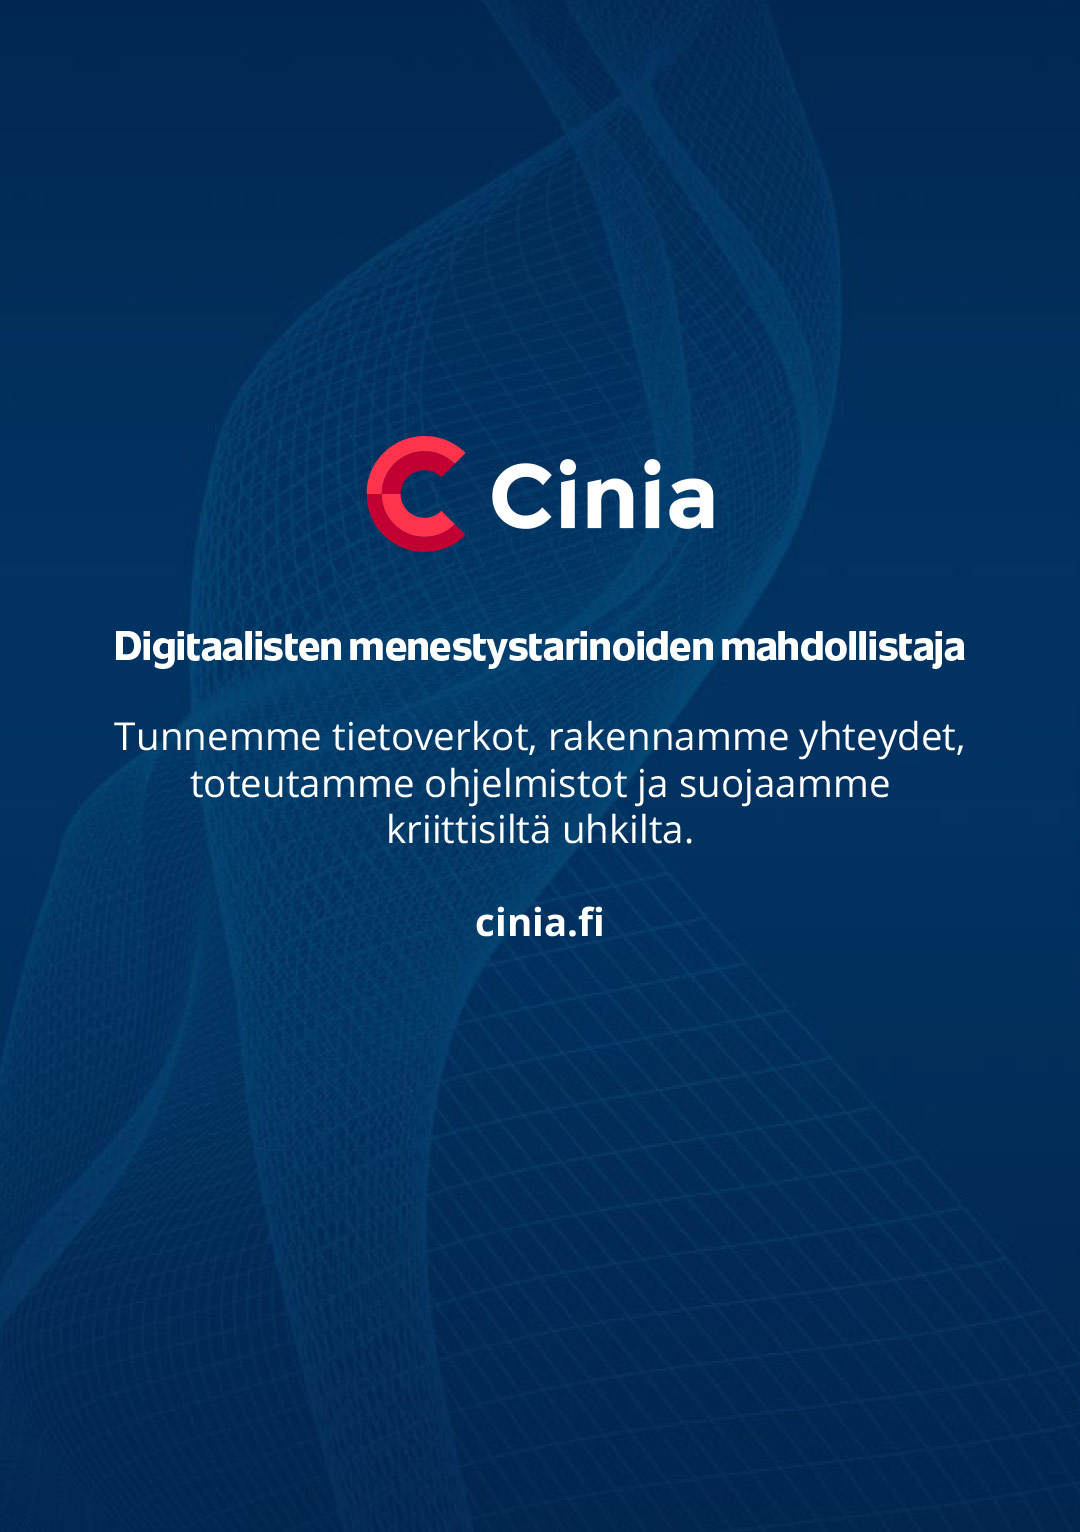 Cinia – Digitaalisten menestystariniden mahdollistaja.